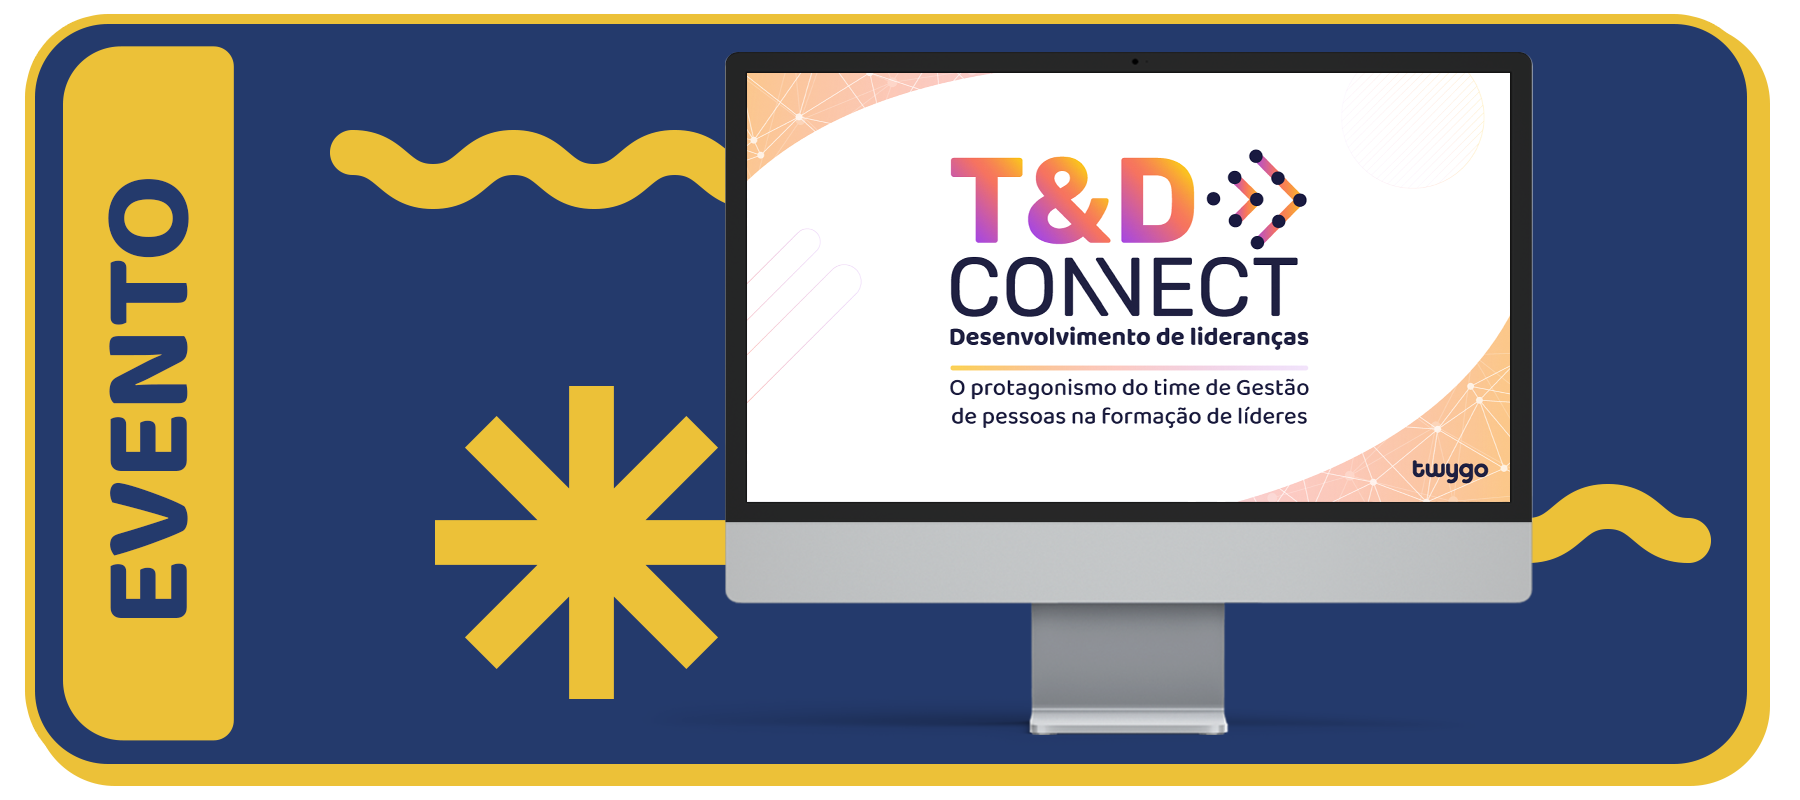 EVENTO T&D Connect Desenvolvimento de Lideranças